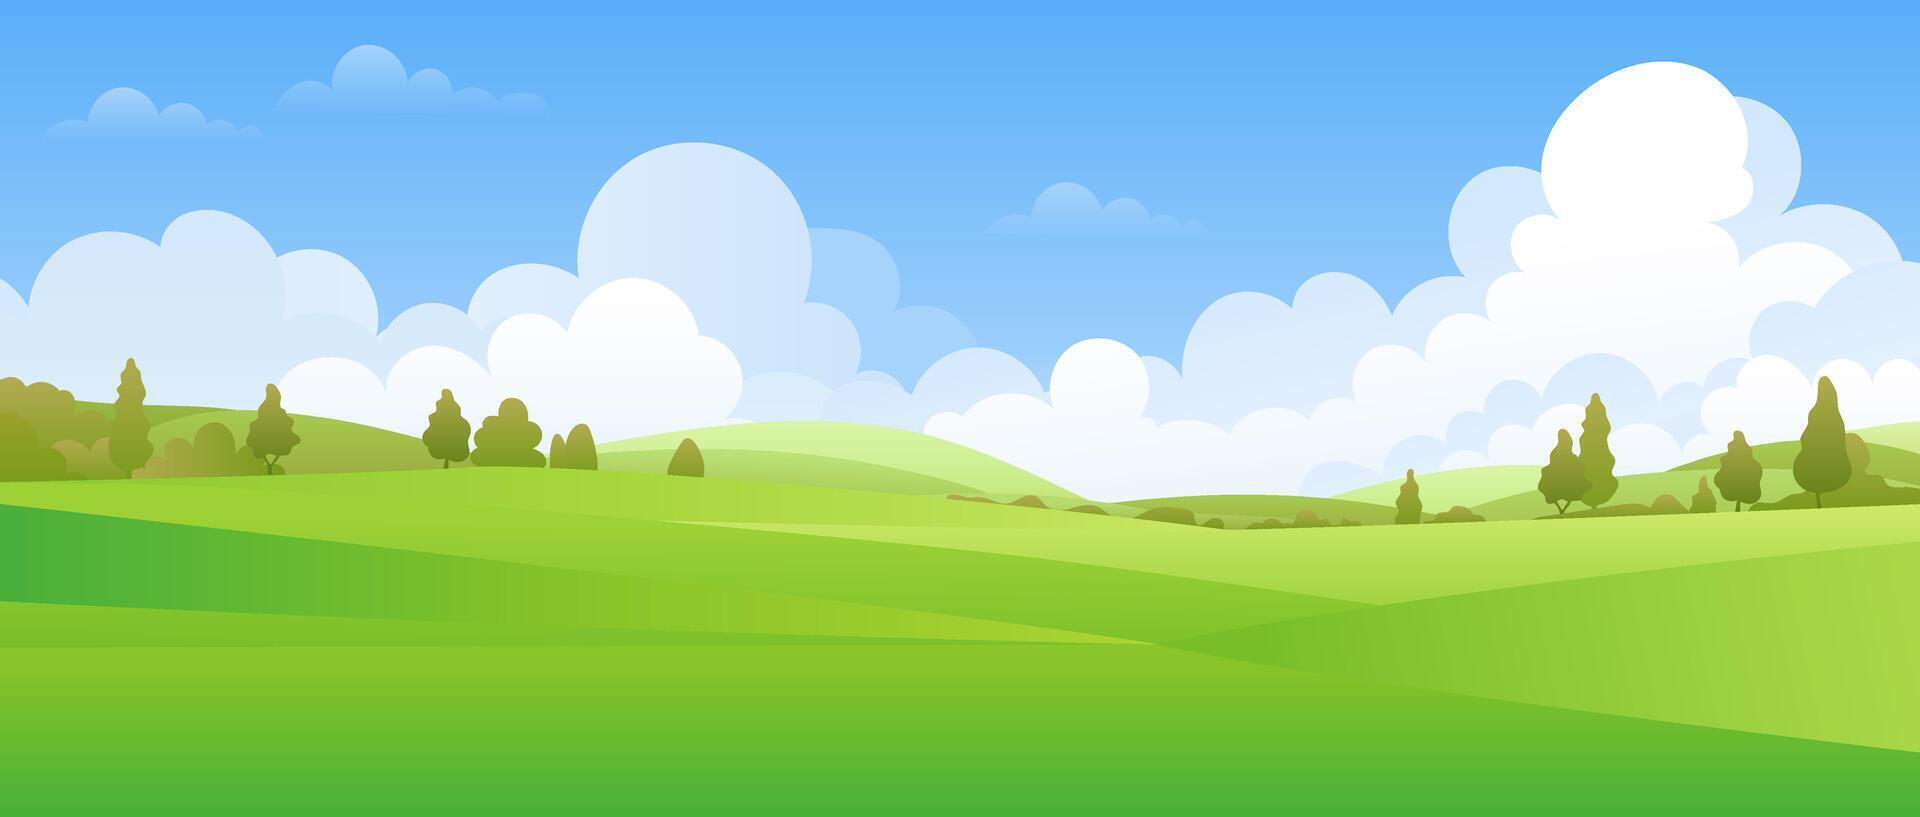 un panorámico paisaje presentando un verde Valle con árboles, prados, y colinas debajo un azul cielo. ideal para ilustrando el belleza de naturaleza en verano. Copiar espacio para varios proyectos no ai. vector